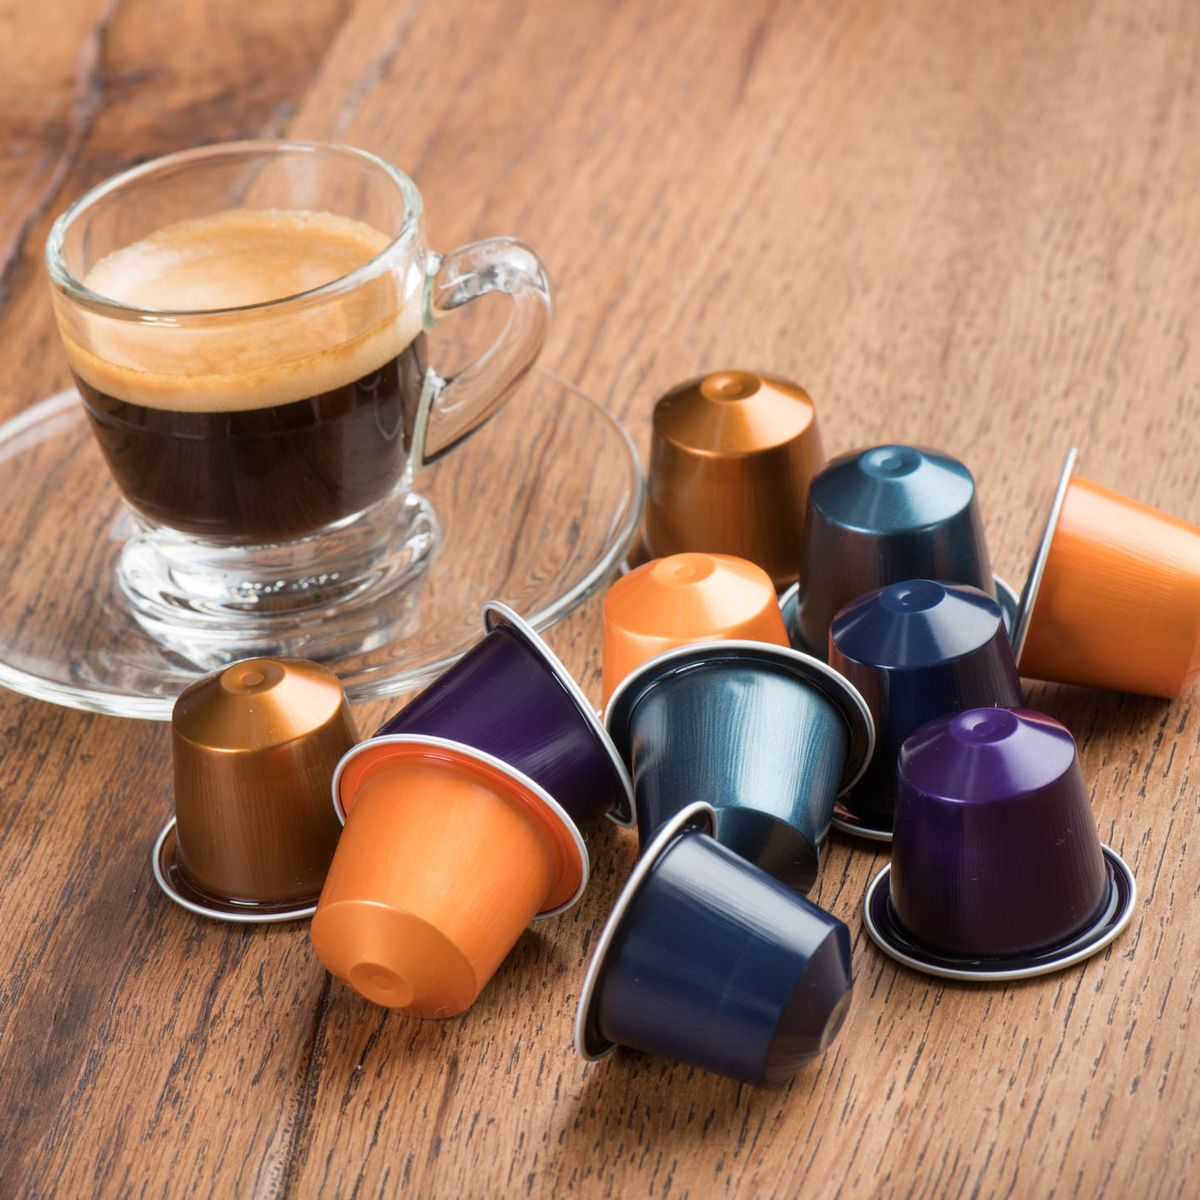 Dolce Gusto o Nespresso, ¿cuál compro? - Blog de PcComponentes